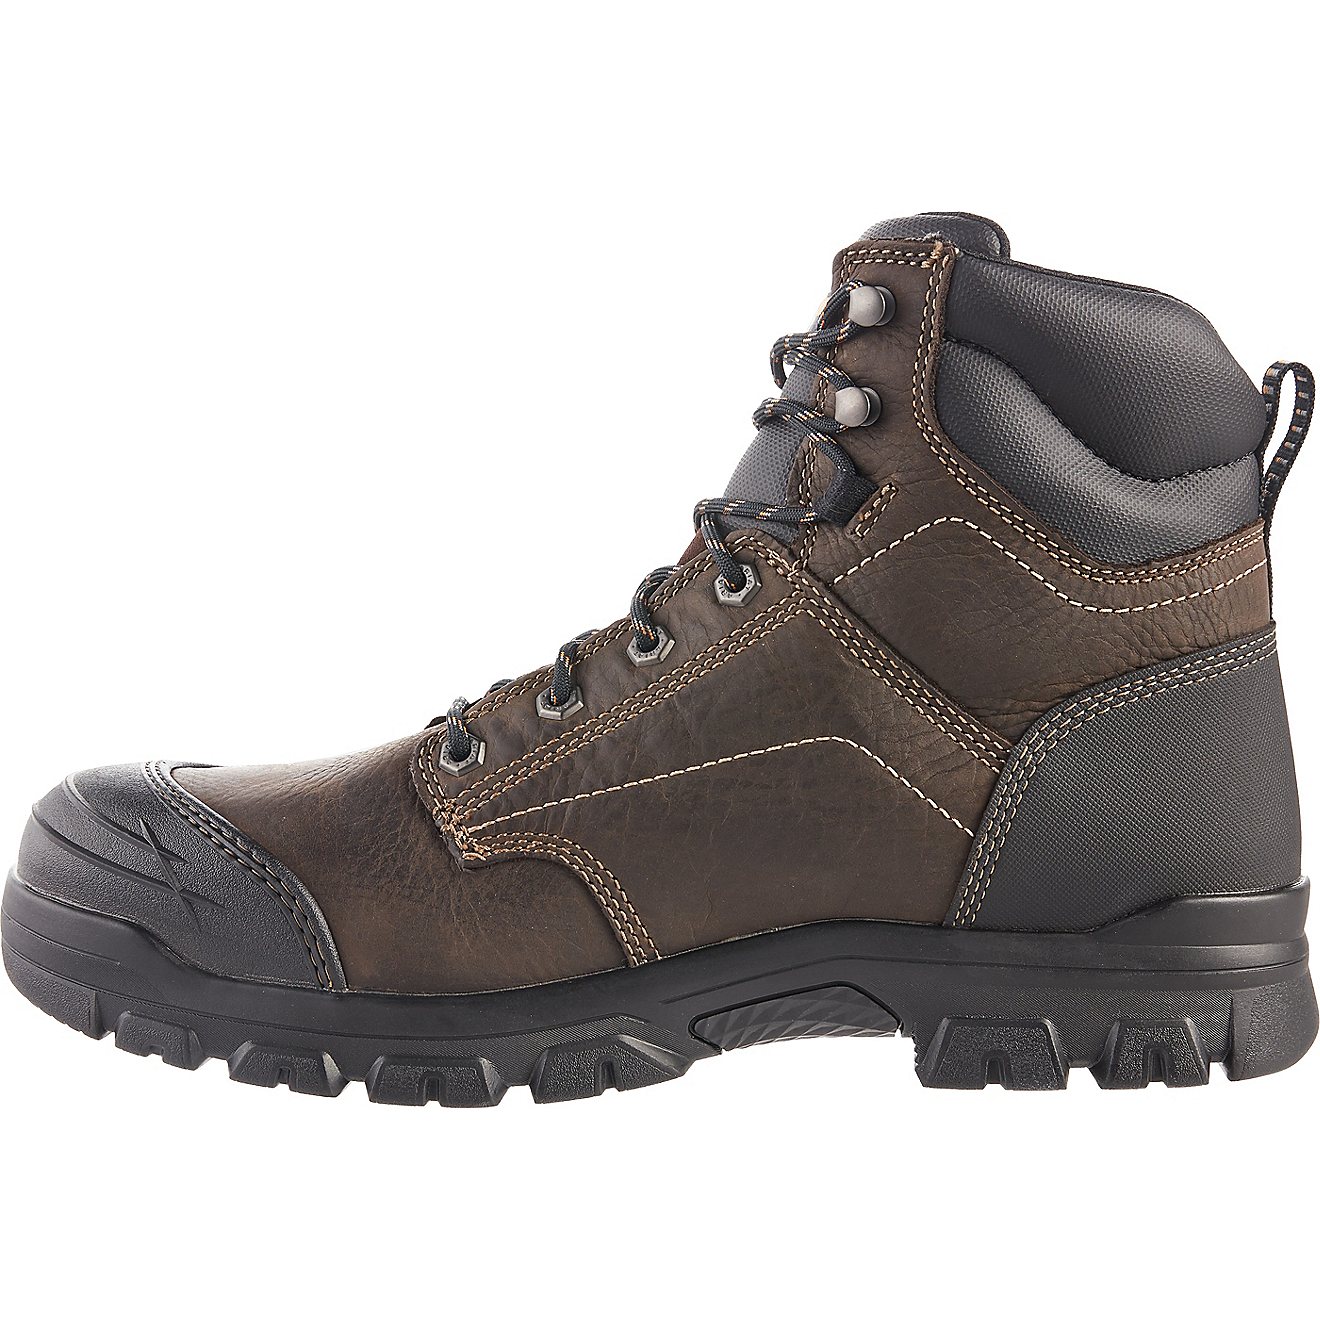 Ariat Men's Treadfast Waterproof Steel Toe 6 in Work Boots                                                                       - view number 2